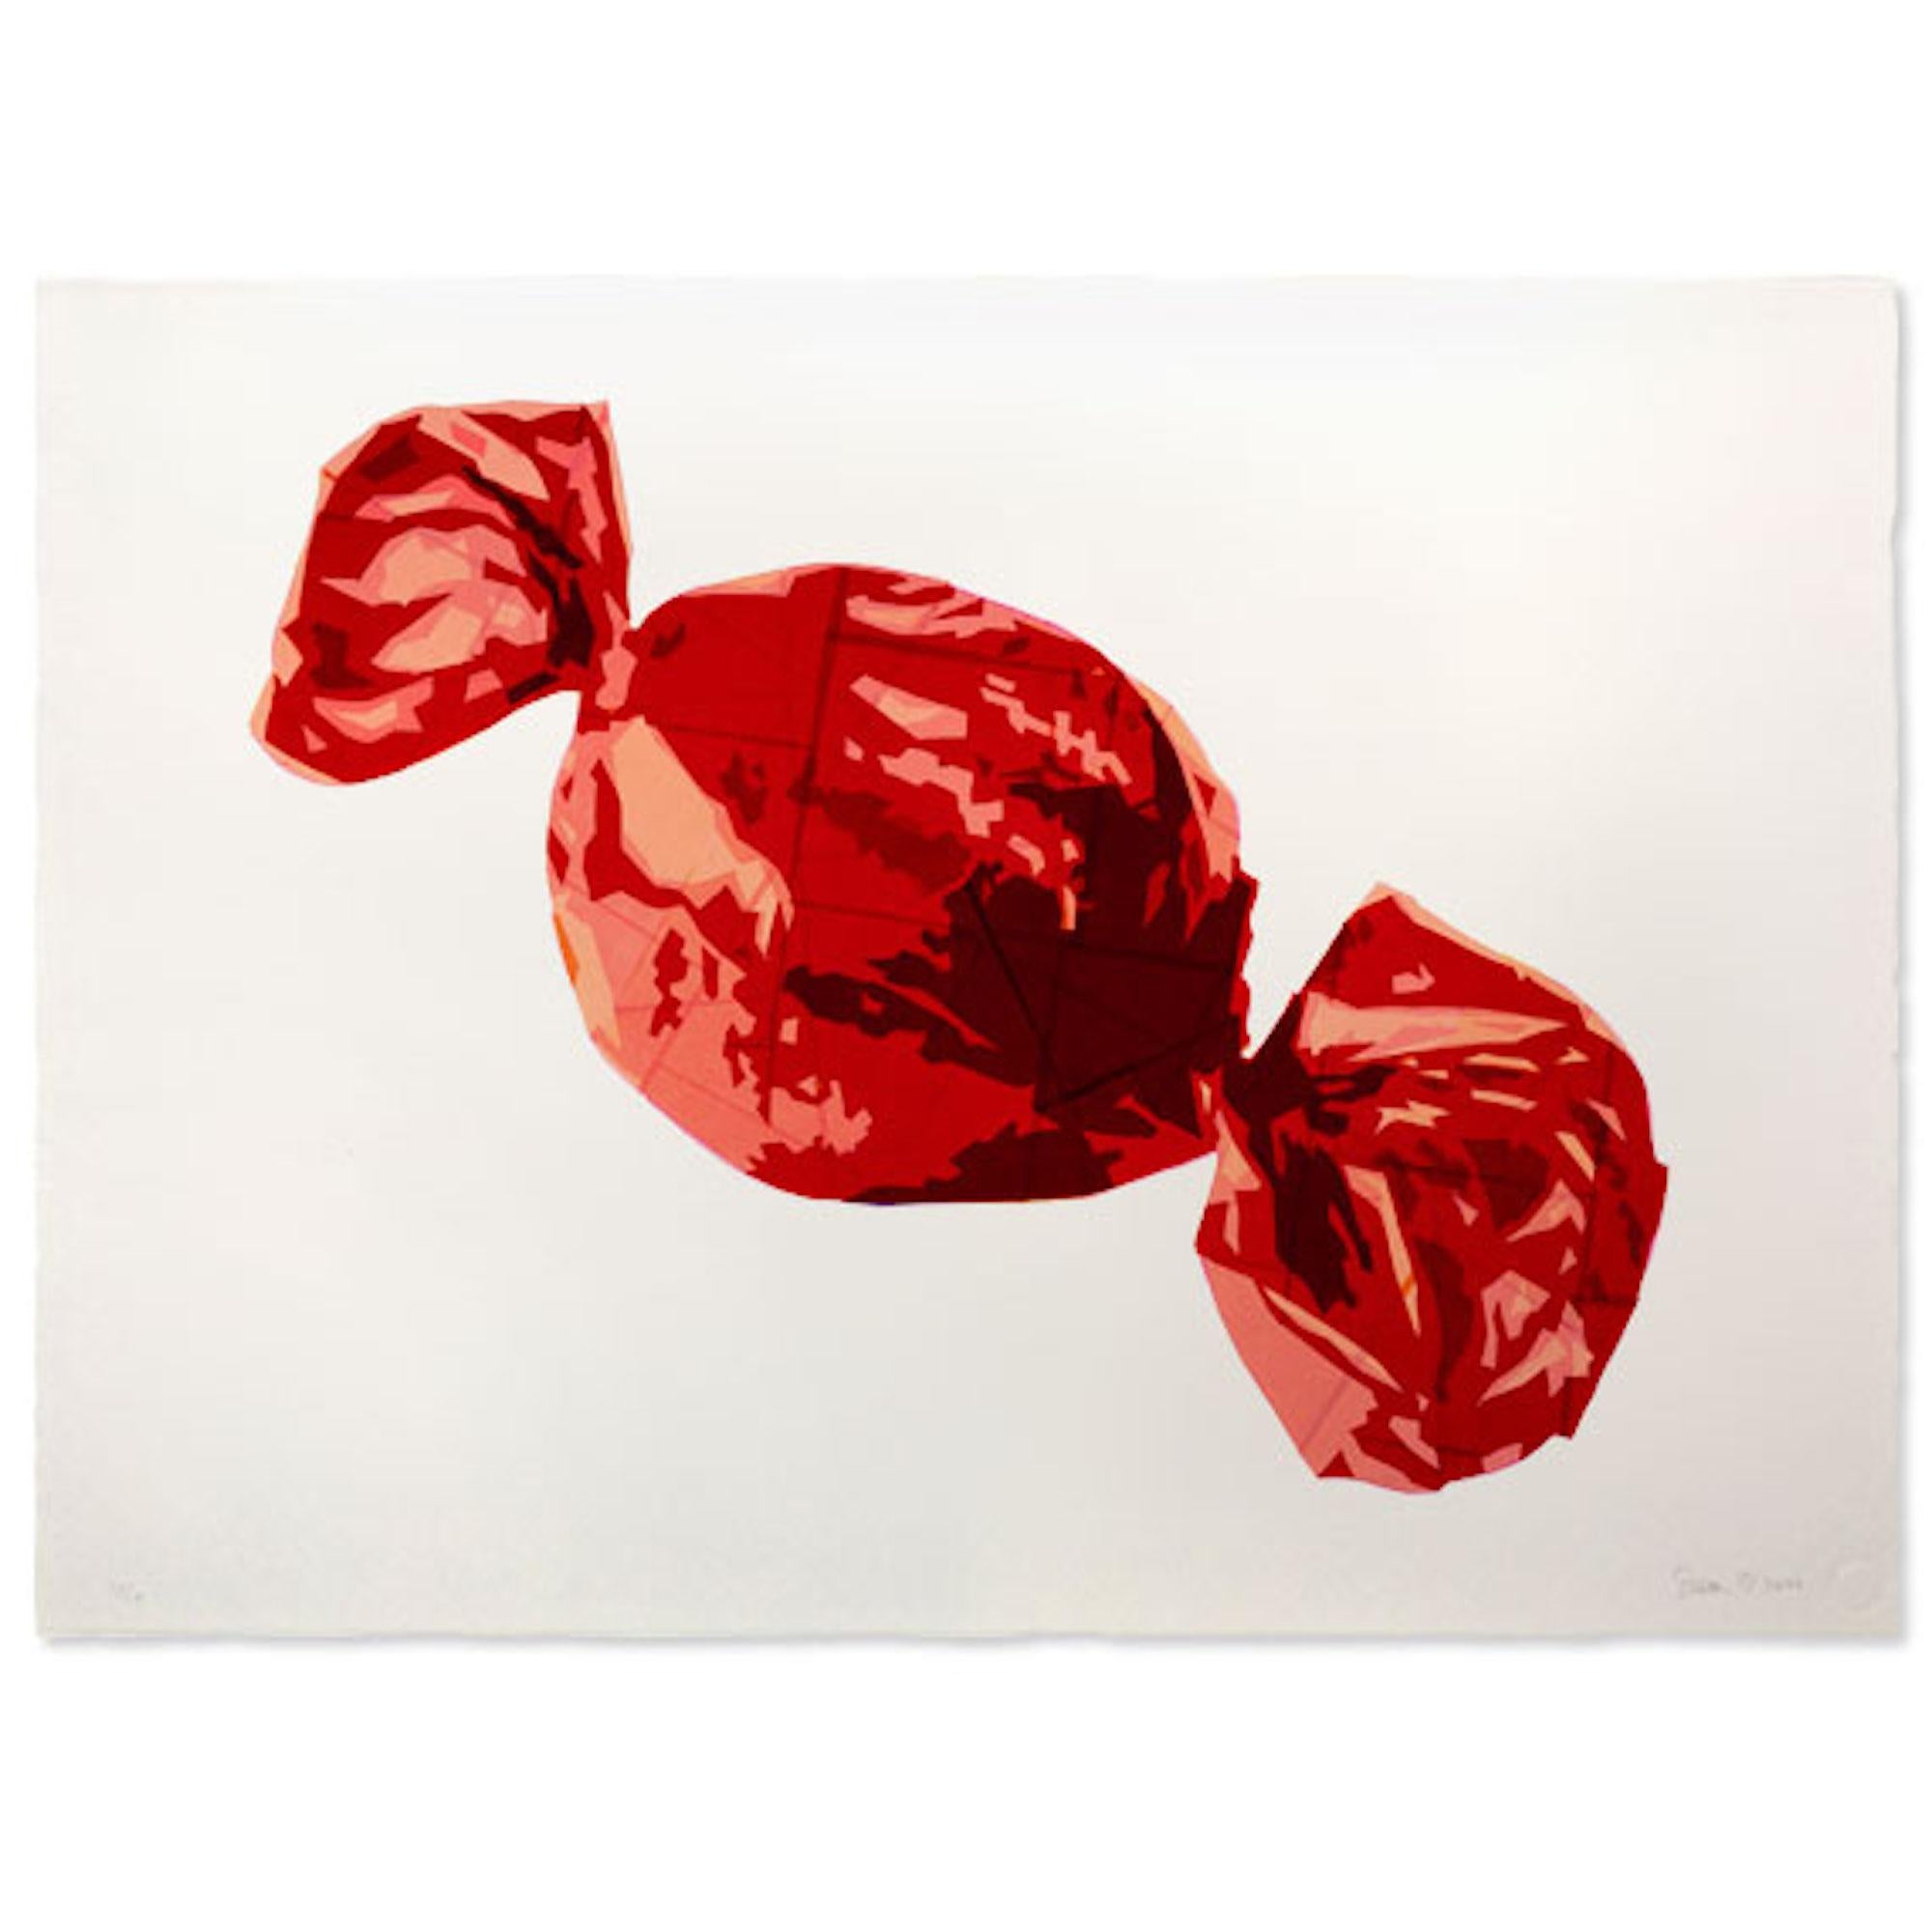 The Red One, süße Kunst, hochwertiges Straßenkunstwerk, Stillleben-Kunstwerk (Pop-Art), Print, von Simon Dry